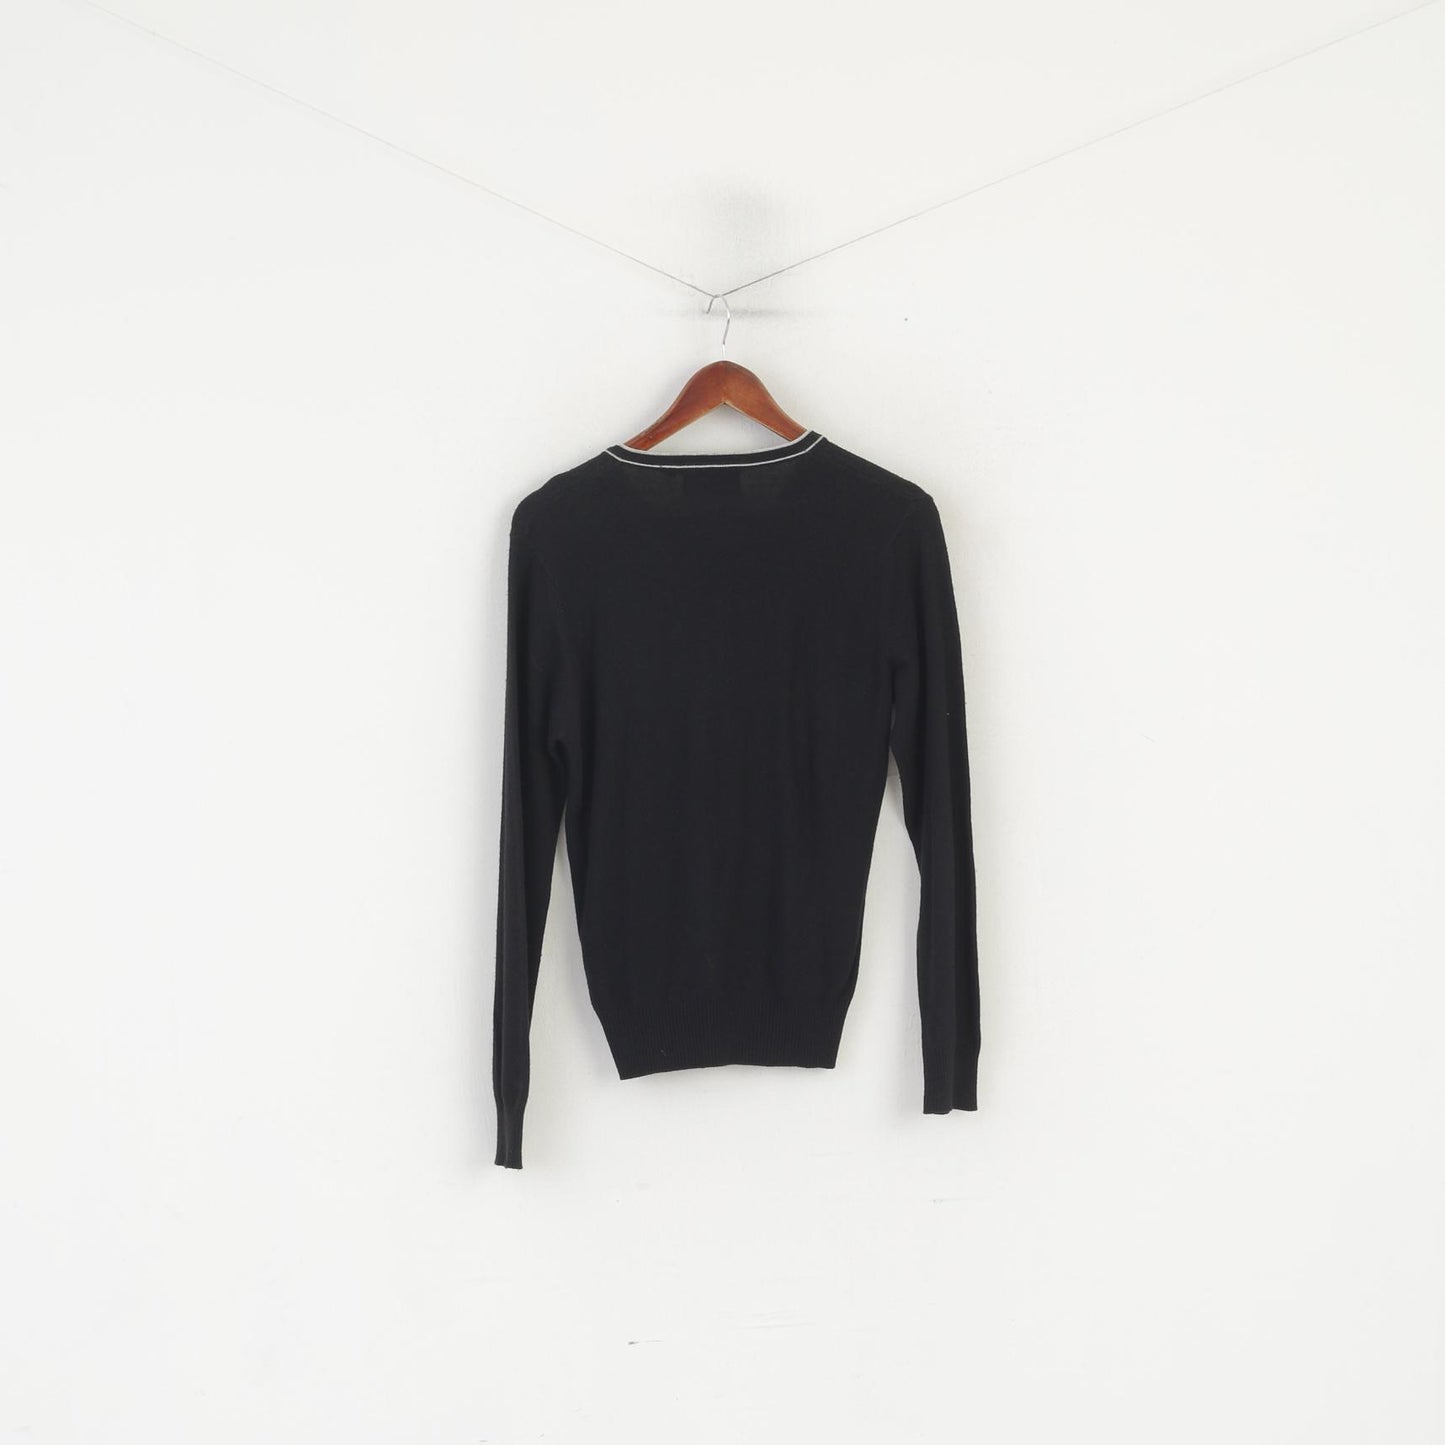 Lee Women S Jumper Black Knitwear Wool Blend V Neck Soft Thin Sweater